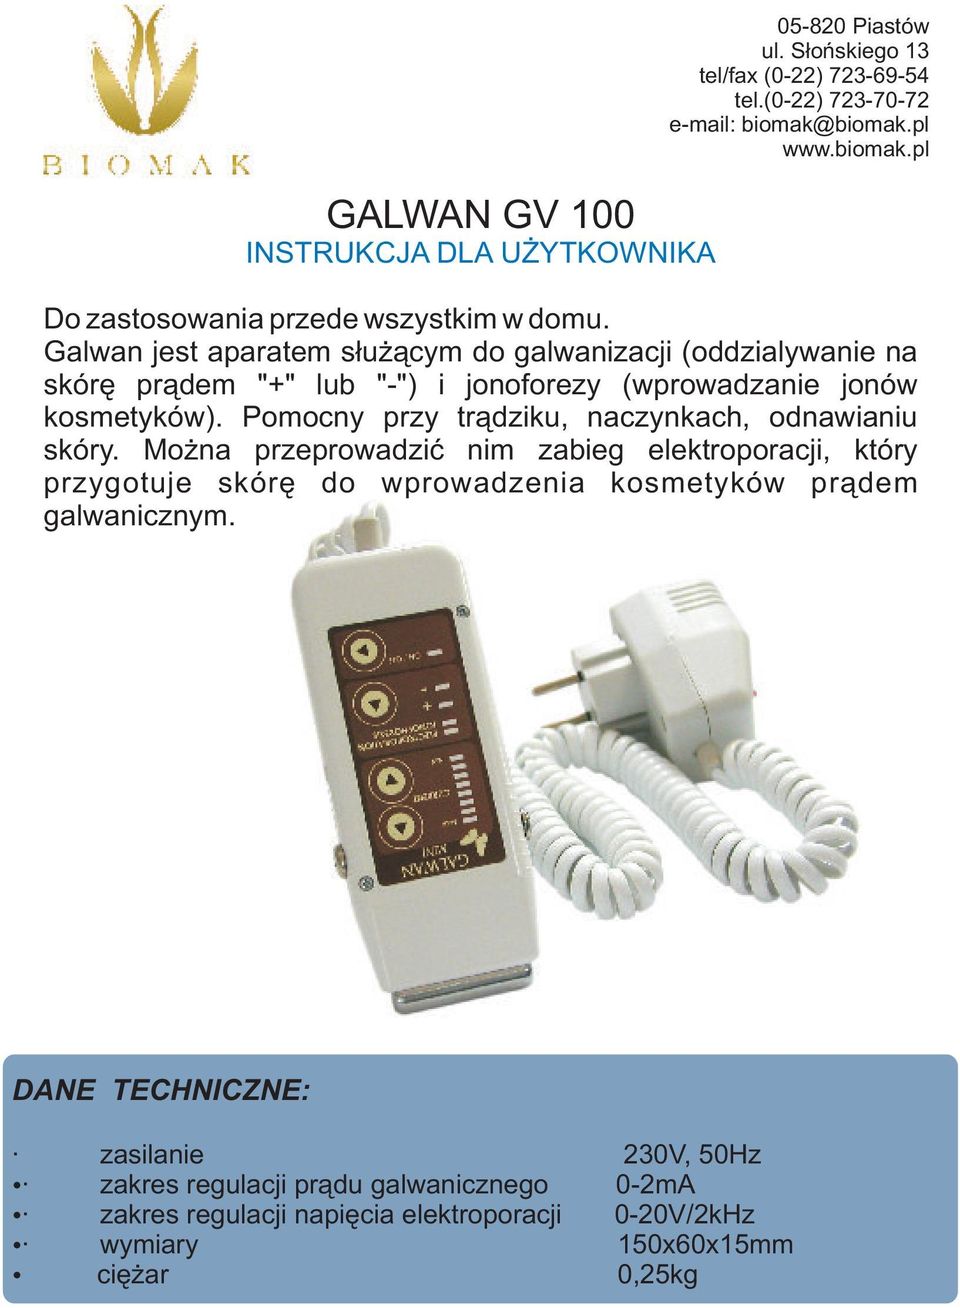 Galwan jest aparatem s³u ¹cym do galwanizacji (oddzialywanie na skórê pr¹dem "+" lub "-") i jonoforezy (wprowadzanie jonów kosmetyków).